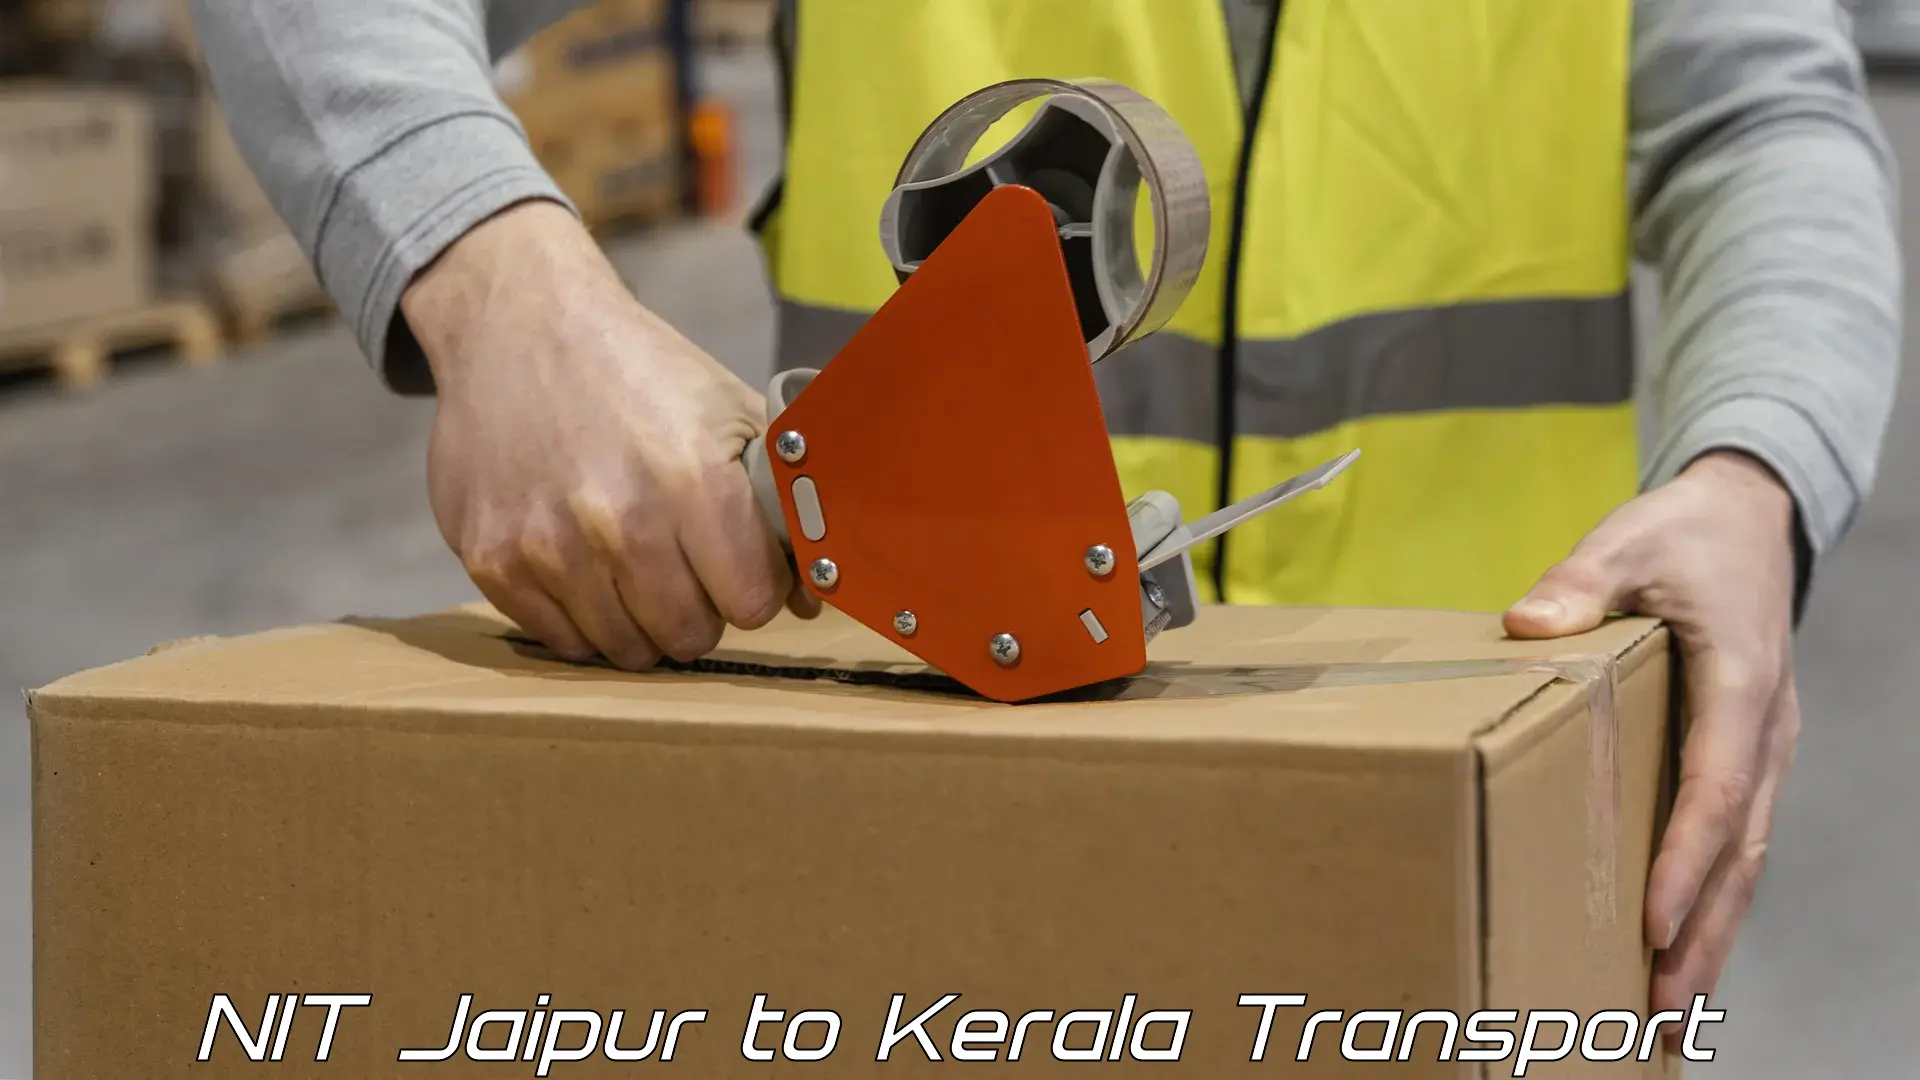 Online transport service NIT Jaipur to Kerala